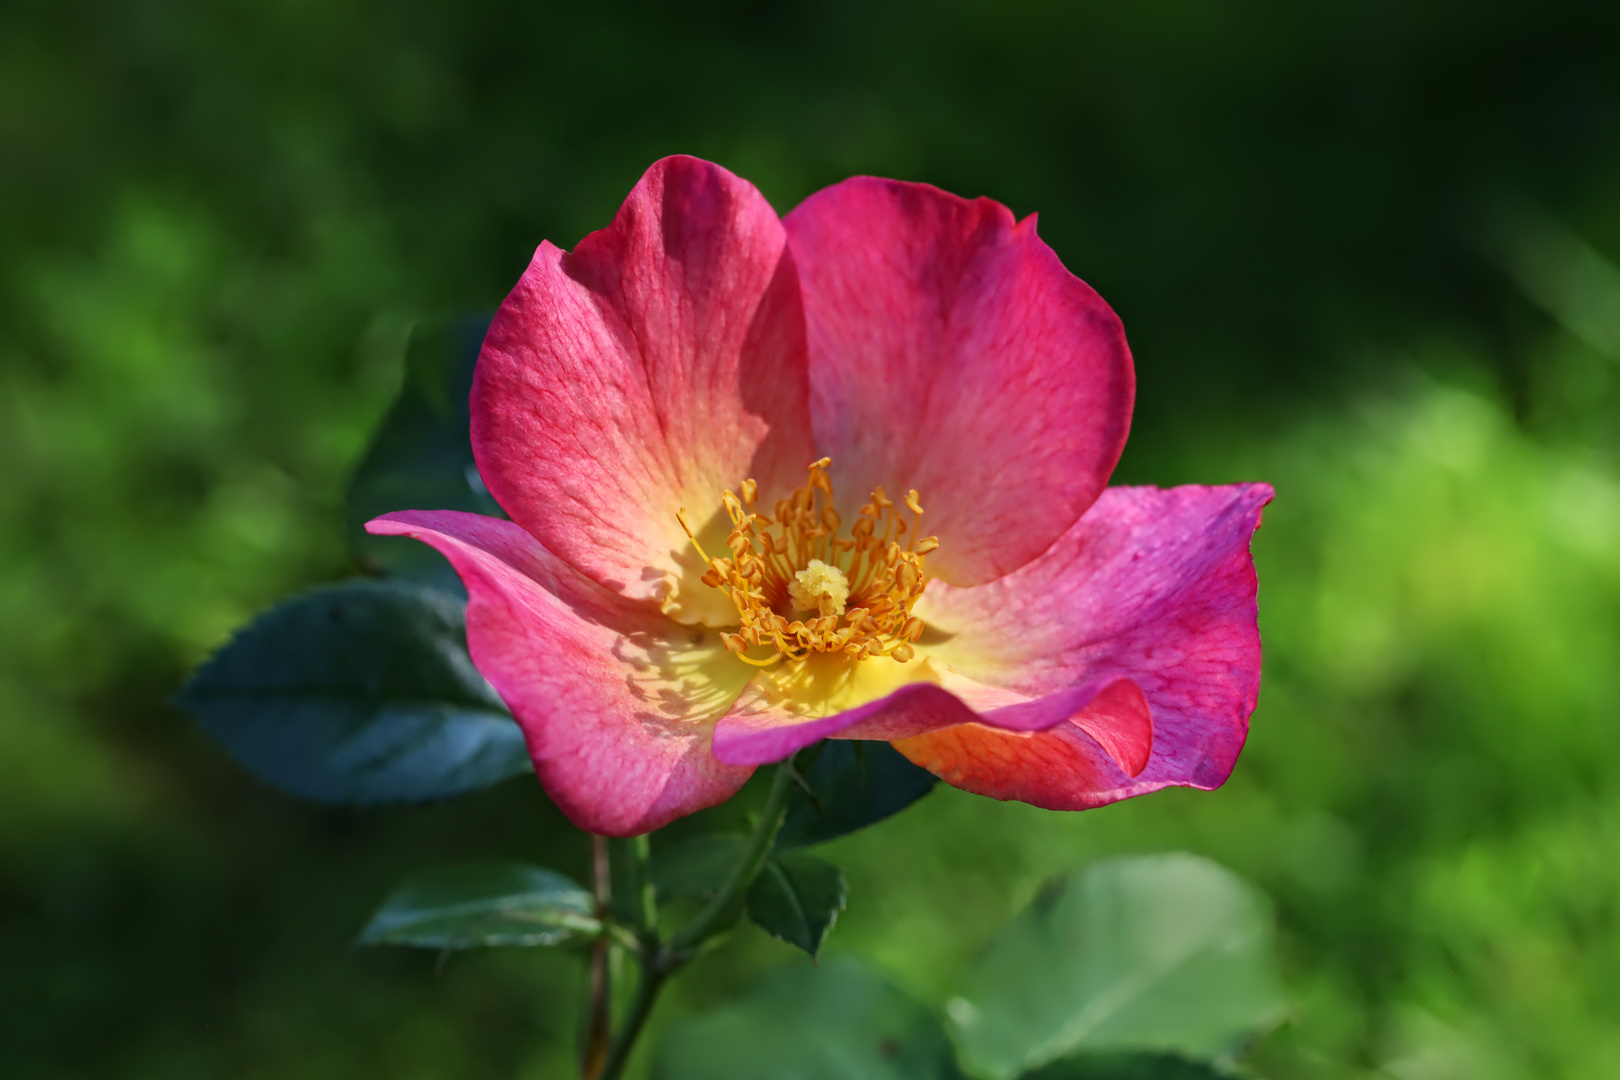 Rosenblüte Ende September - rose in end September